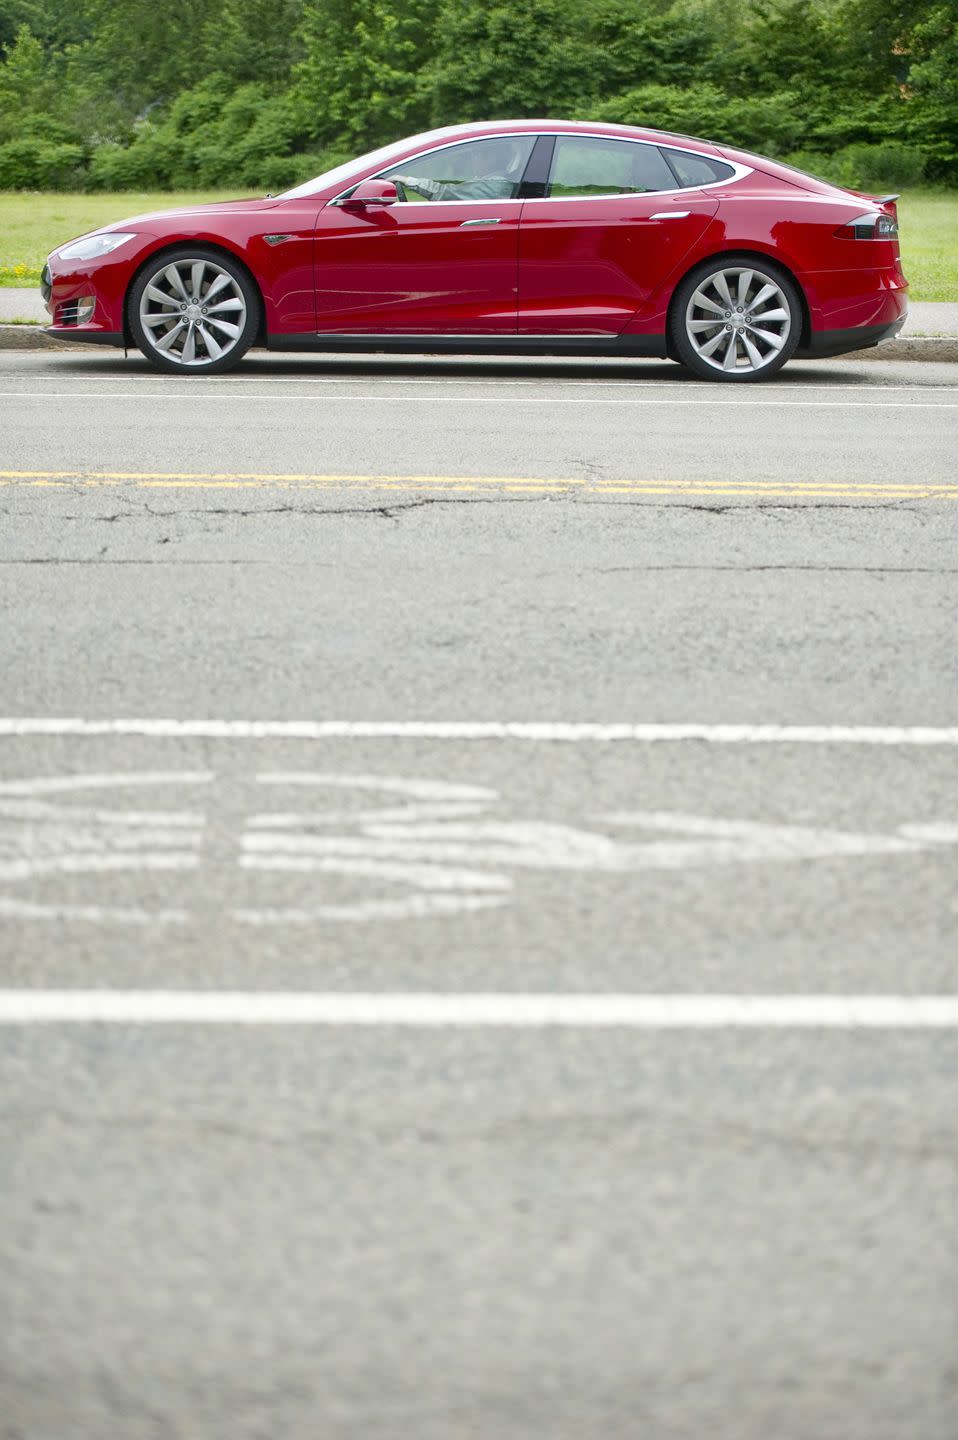 2012: Tesla Model S